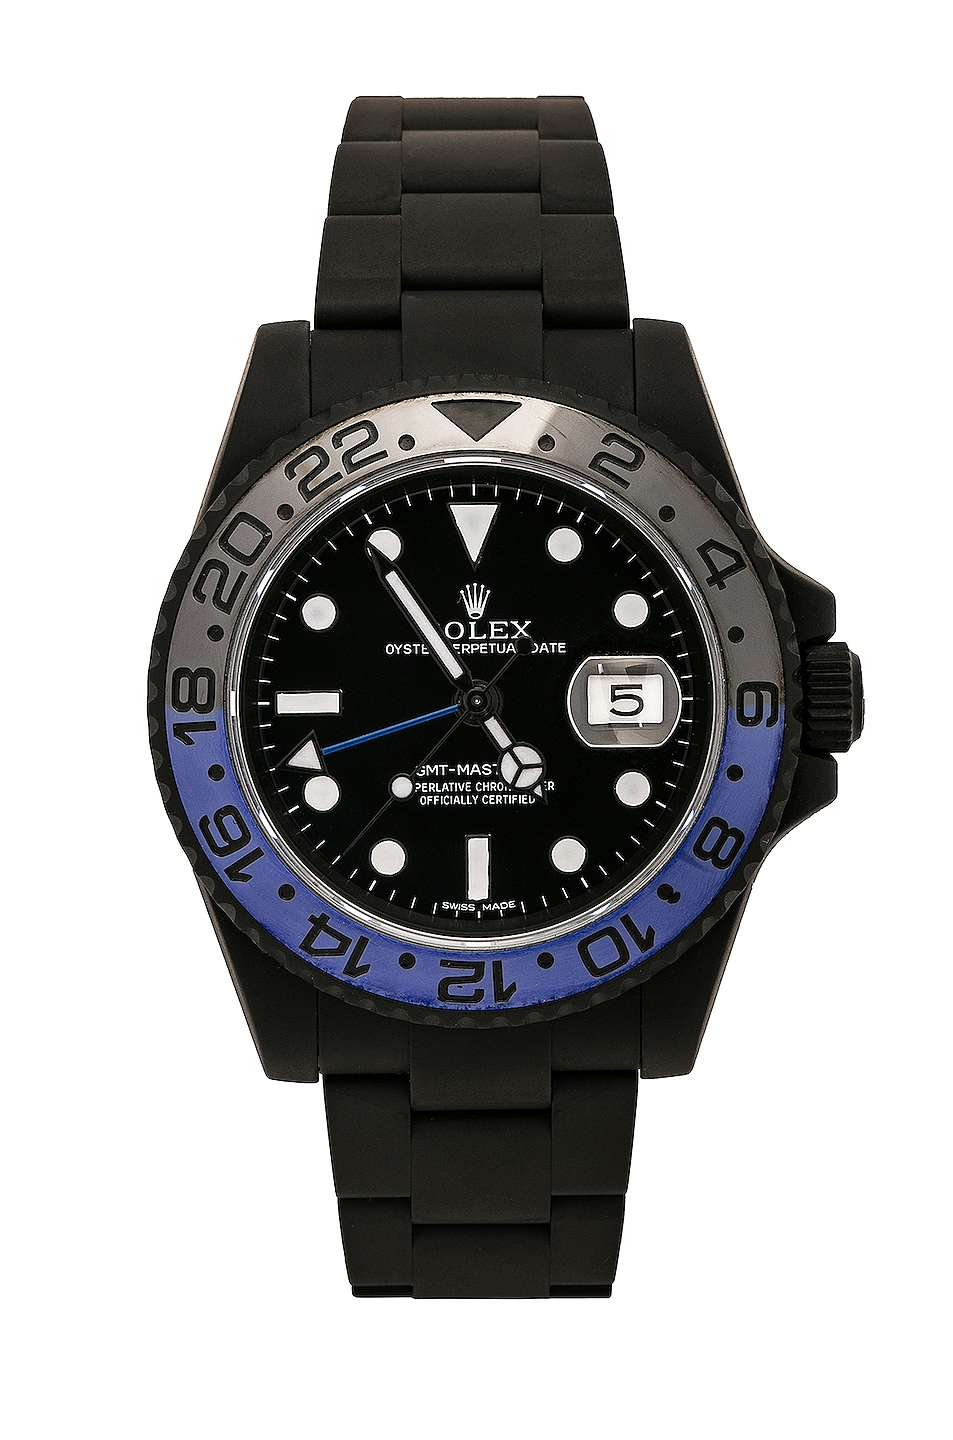 Rolex GMT Master II in Black